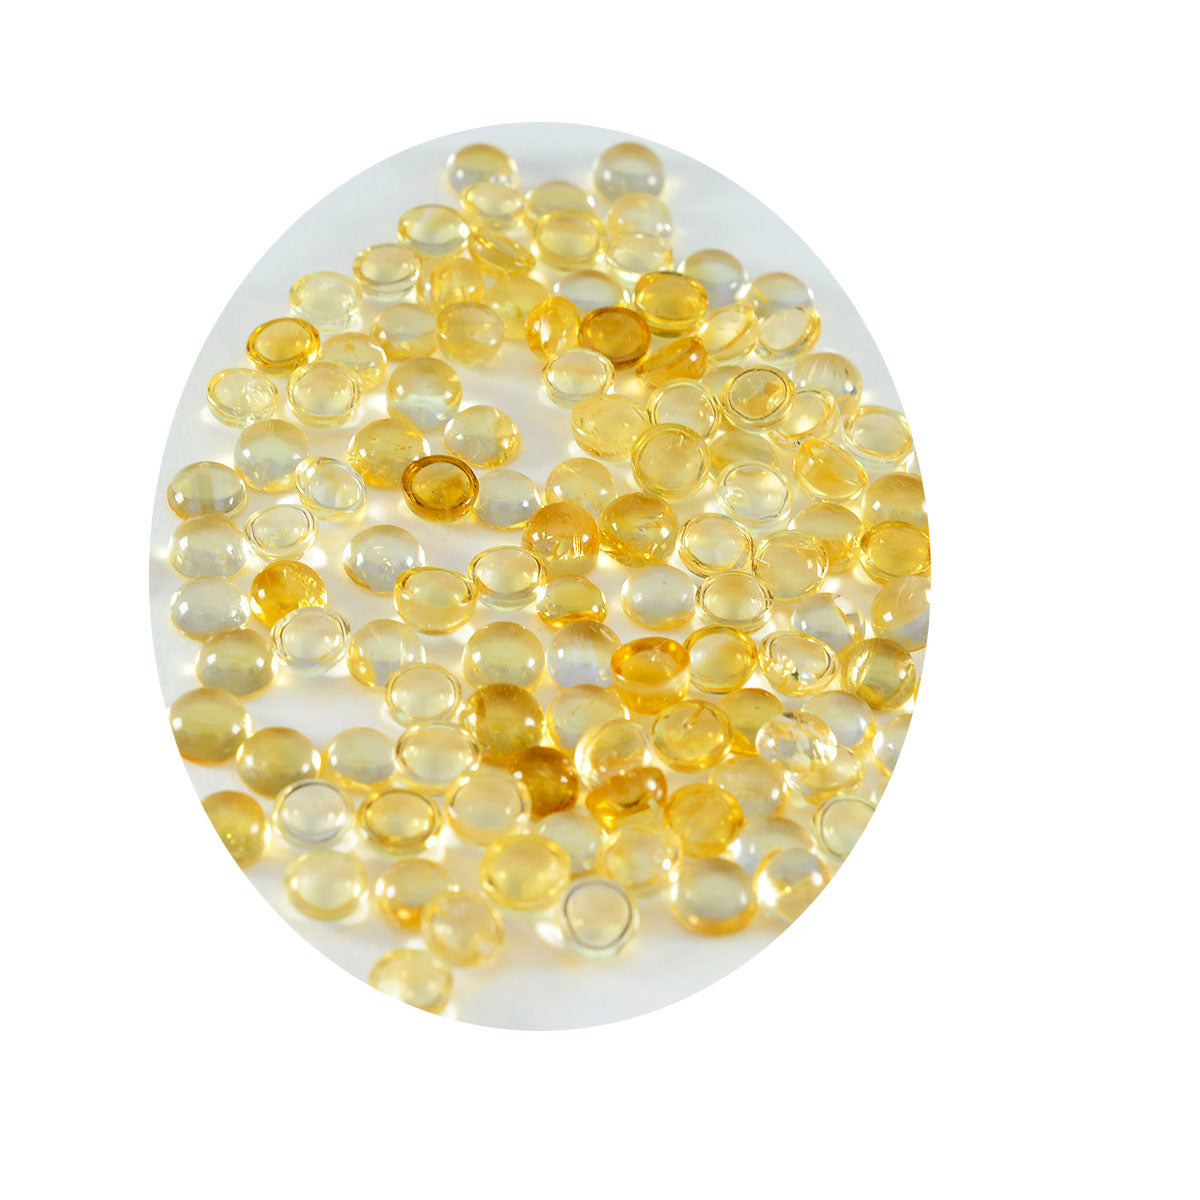 Riyogems 1 cabujón de citrino amarillo de 7 x 7 mm, forma redonda, piedra preciosa de calidad maravillosa